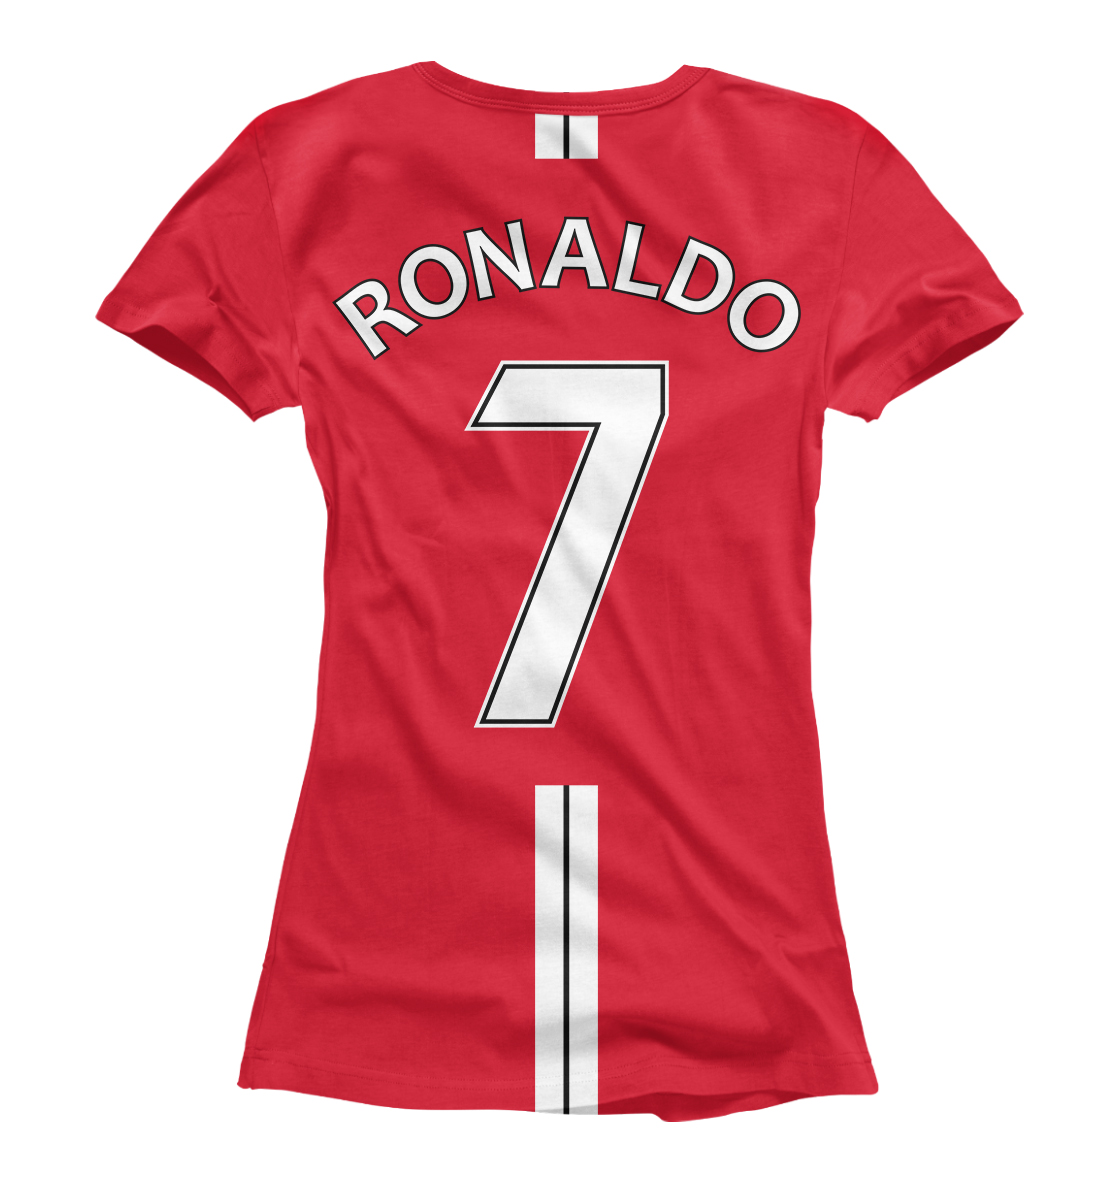 Детская Футболка Ronaldo для девочек, артикул FLT-766881-fut-1mp - фото 2